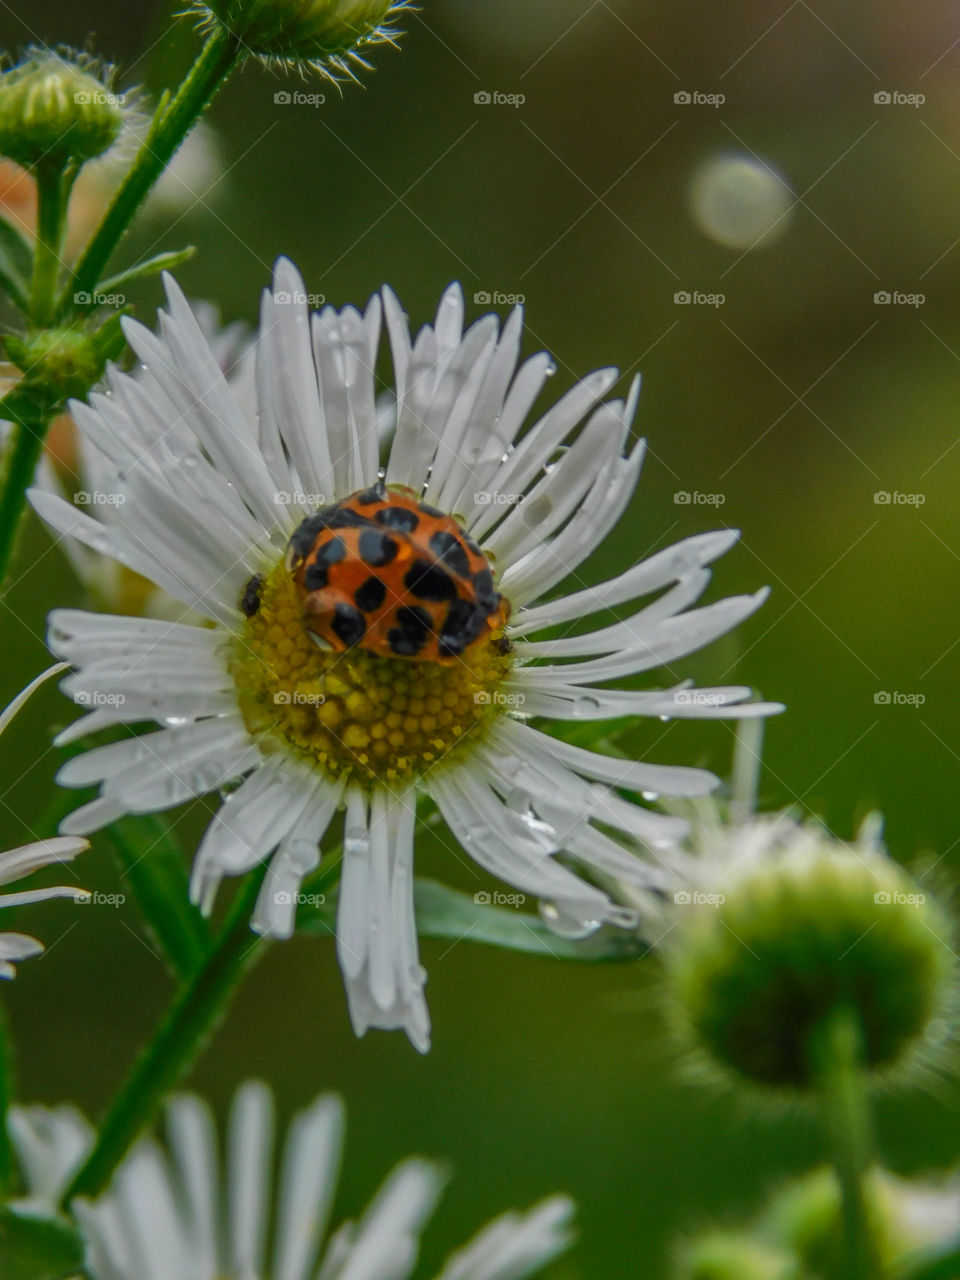 ladybug on a daisy